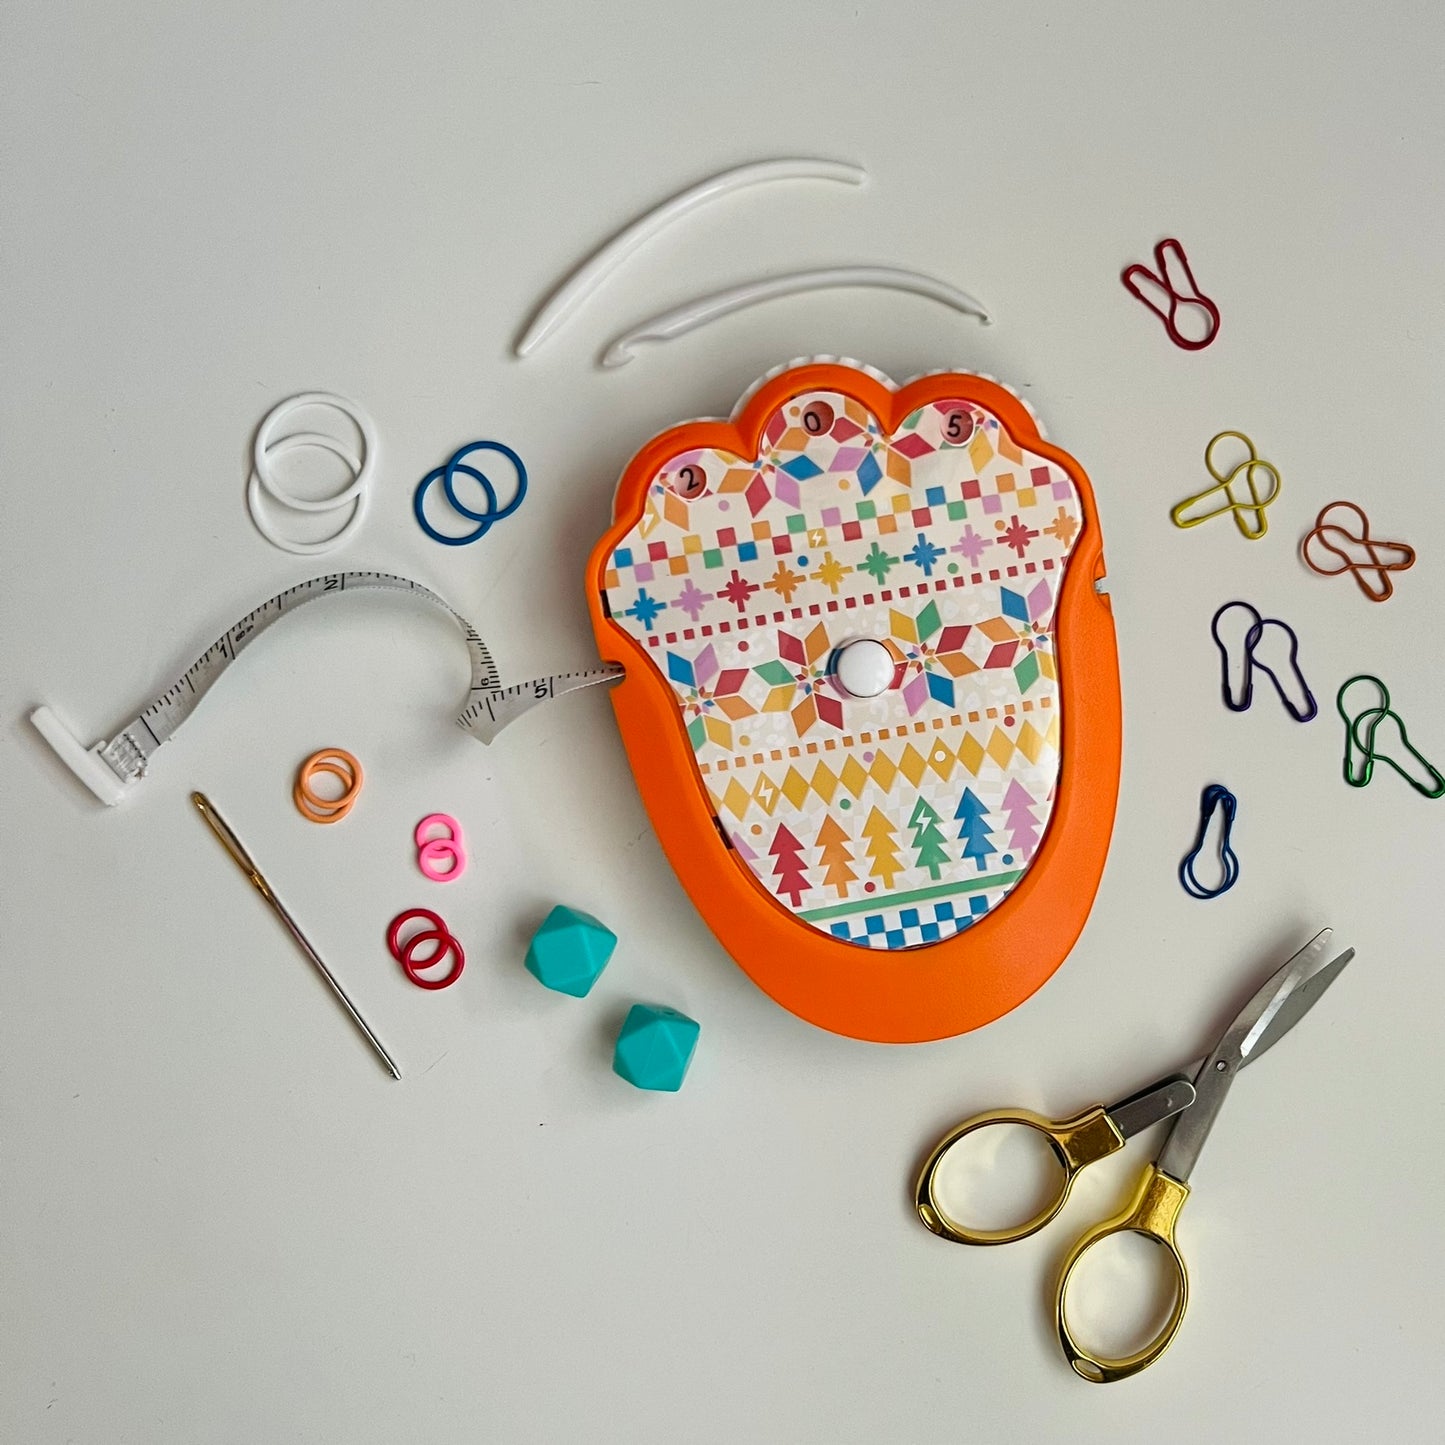 The Knit & Crochet Kit -Rainbow Fair Isle - Assorted Colors